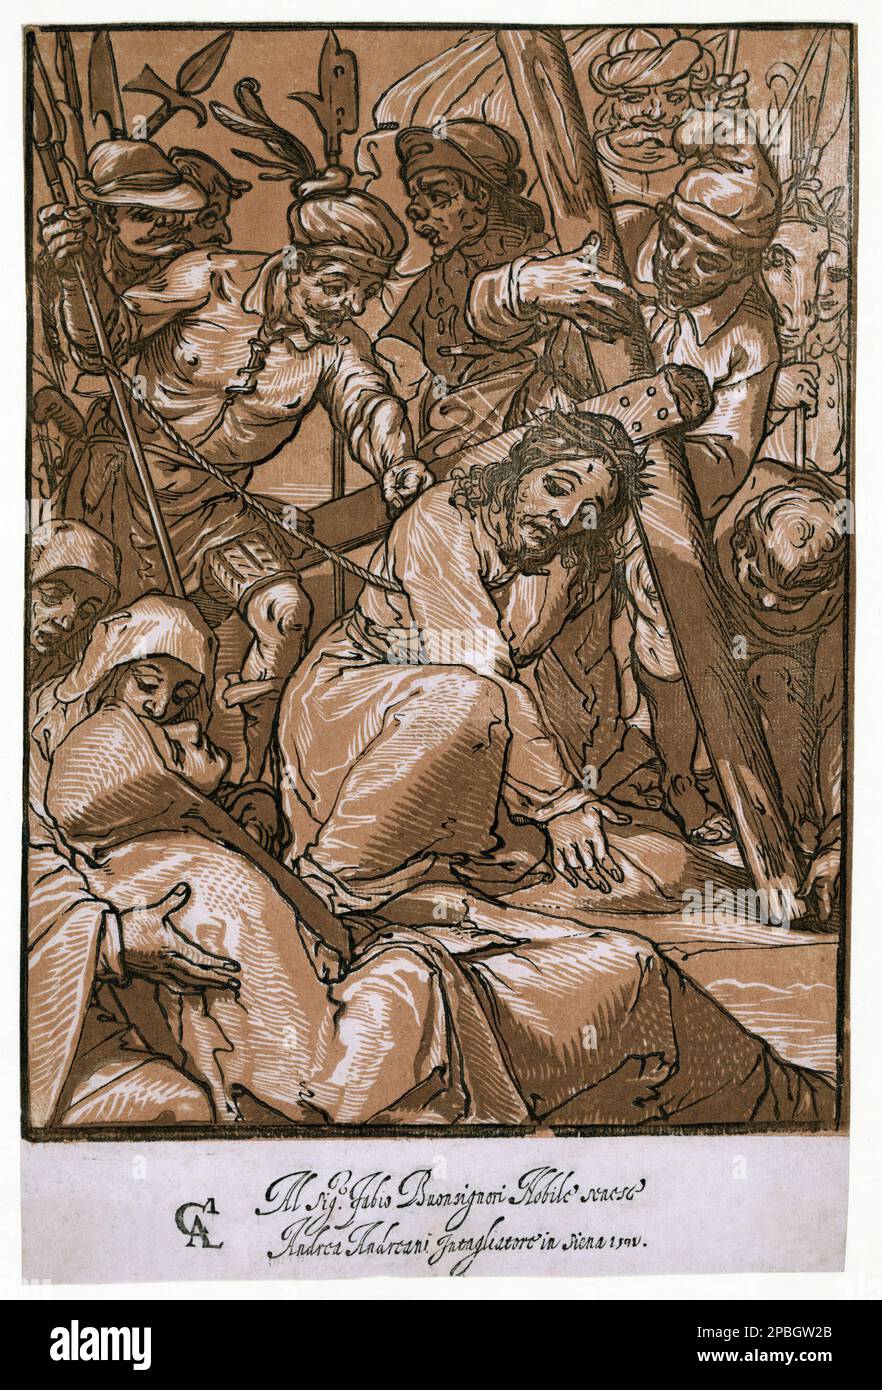 1592 , Siena , ITALY  :  Christ carrying the cross  . Print chiaroscuro woodcut  shows Jesus Christ  struggling under the weight of the cross in front at Virgin Mary . From a painting by italian artist Alessandro Casolani  (Siena ,ca. 1552 - 1607 ), engraved by Andrea Andreani  (ca. 1560 - 1623 ) - VIA CRUCIS - MADONNA - CRISTO CADE SOTTO IL PESO DELLA CROCE  - PASSIO CHRISTI - PASSIONE DI CRISTO - CROCEFISSIONE - GESU' CRISTO  - IMMAGINE SACRA - POPOLARE - RELIGIONE - VERGINE MARIA  - RELIGIONE CATTOLICA - CATHOLIC RELIGION - portrait - ritratto - illustrazione - incisione   ----  Archivio GB Stock Photo